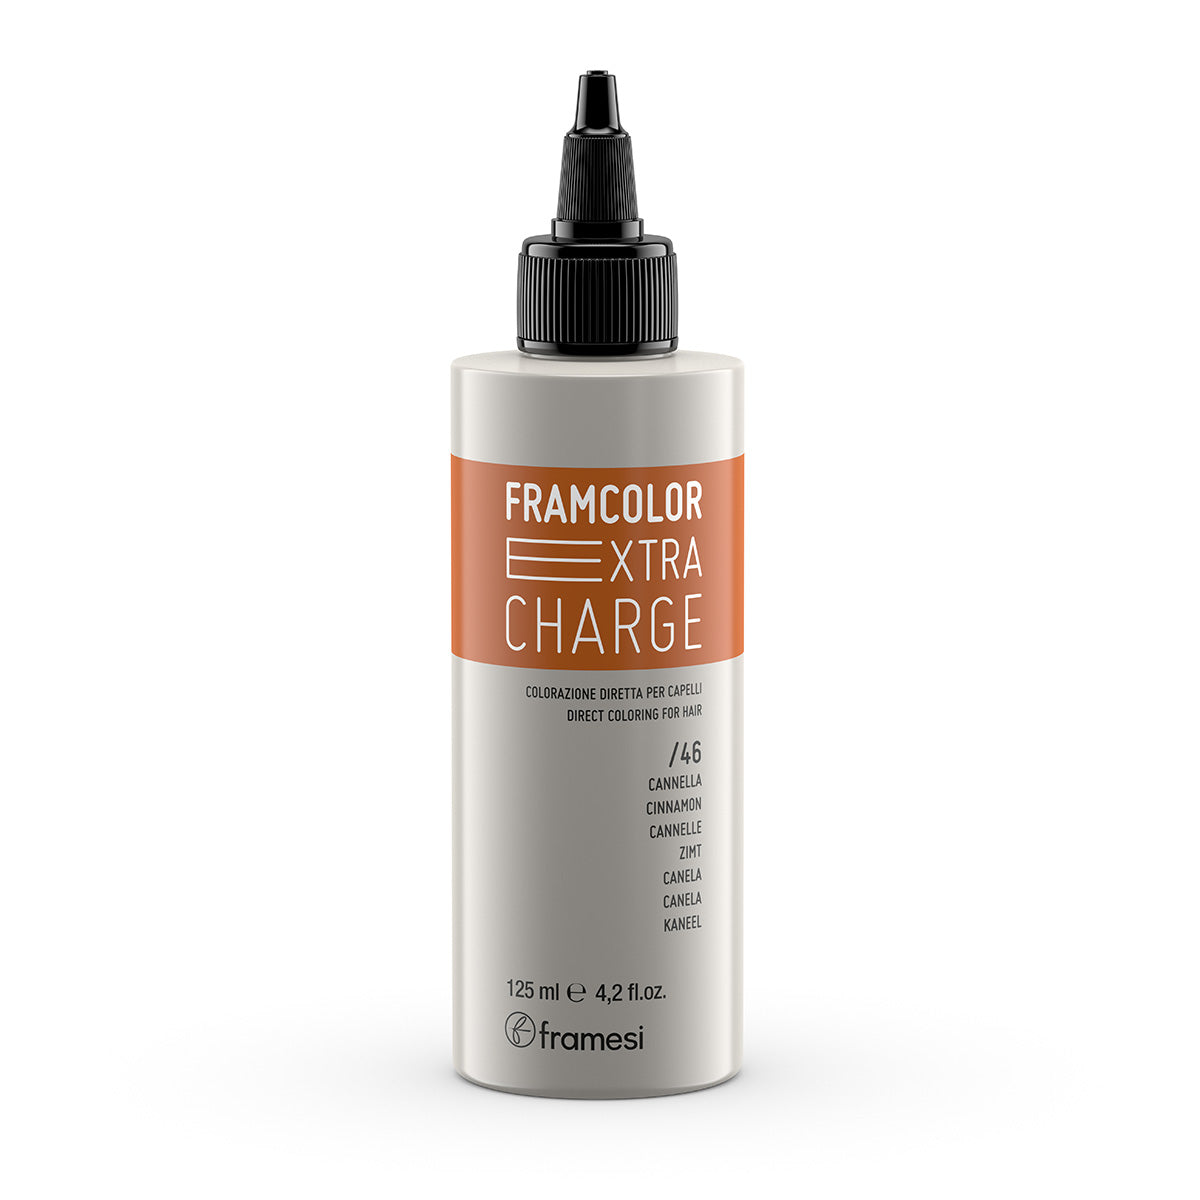 Framesi - Framcolor Extra Charge - Cinnamon 125ml